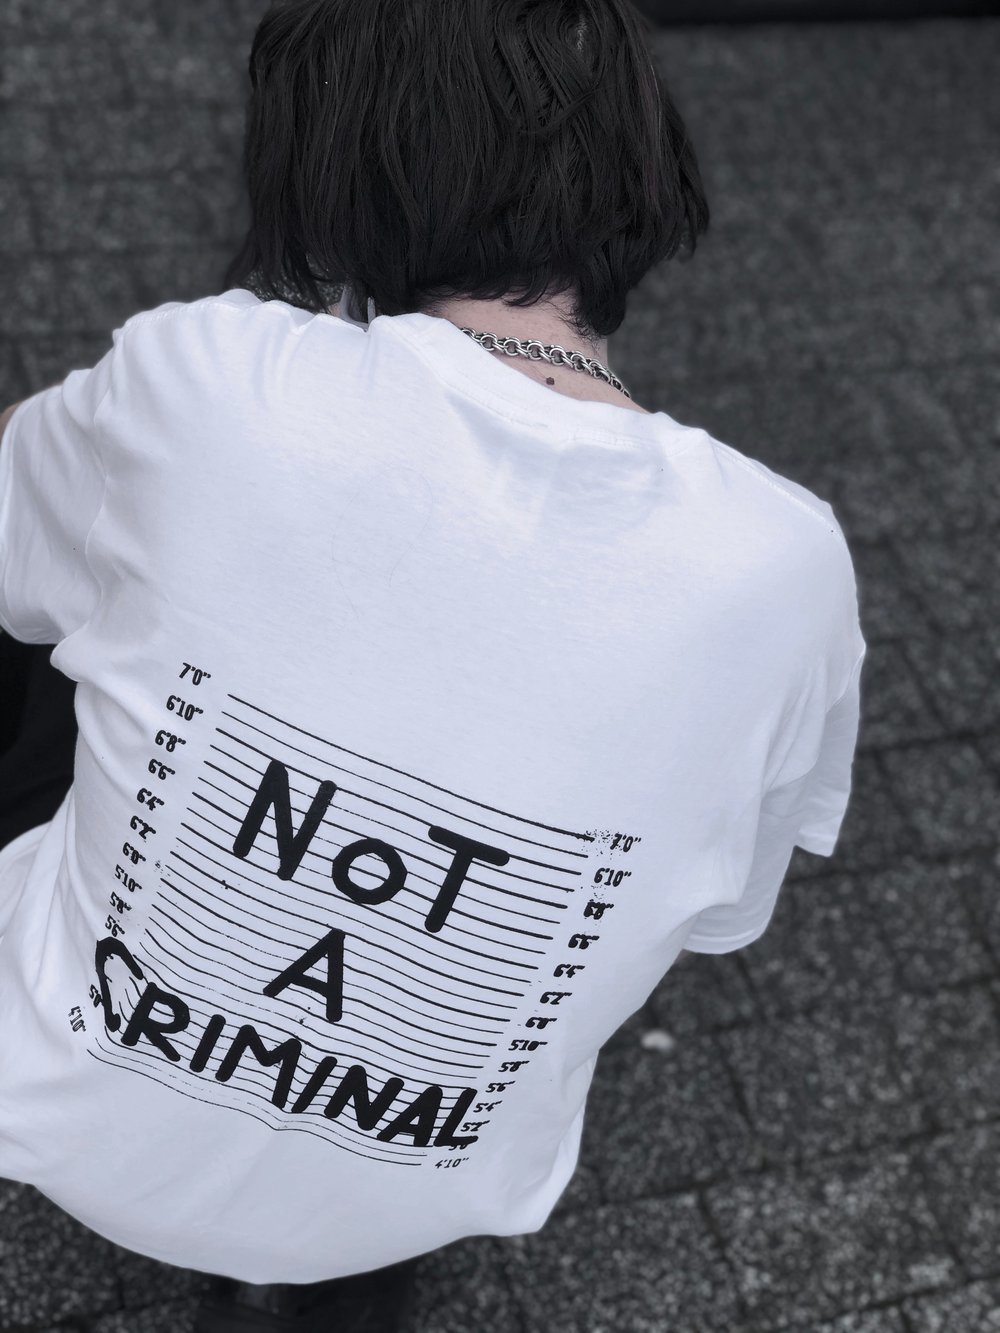 'Not a Criminal'